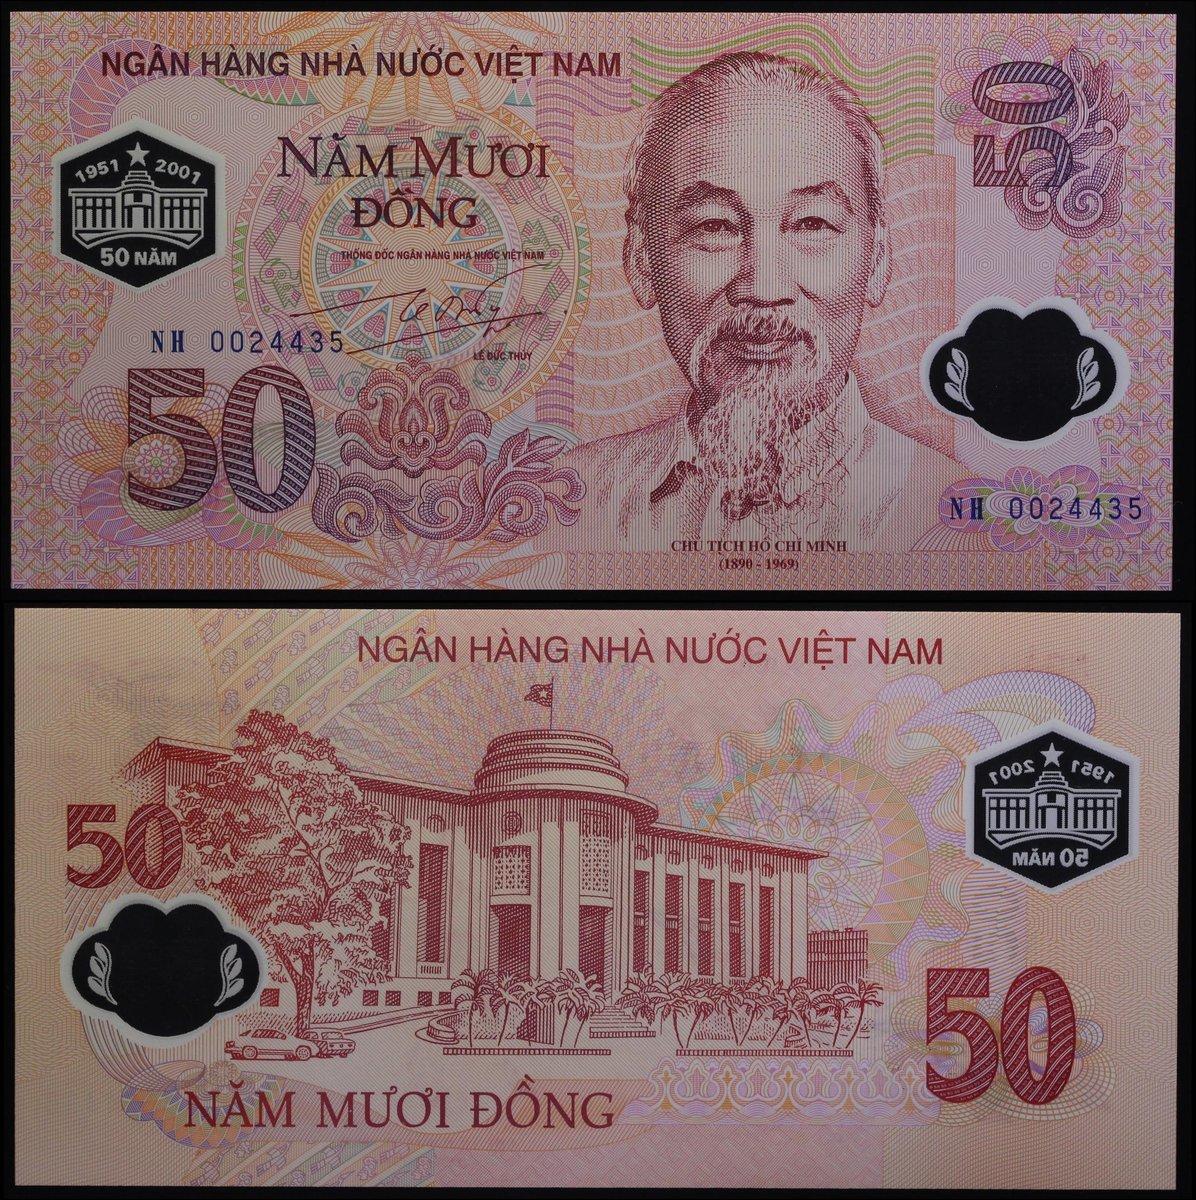 Vietnam Viet Nam 100 Dong p-125 2016 Commemorative UNC Banknote